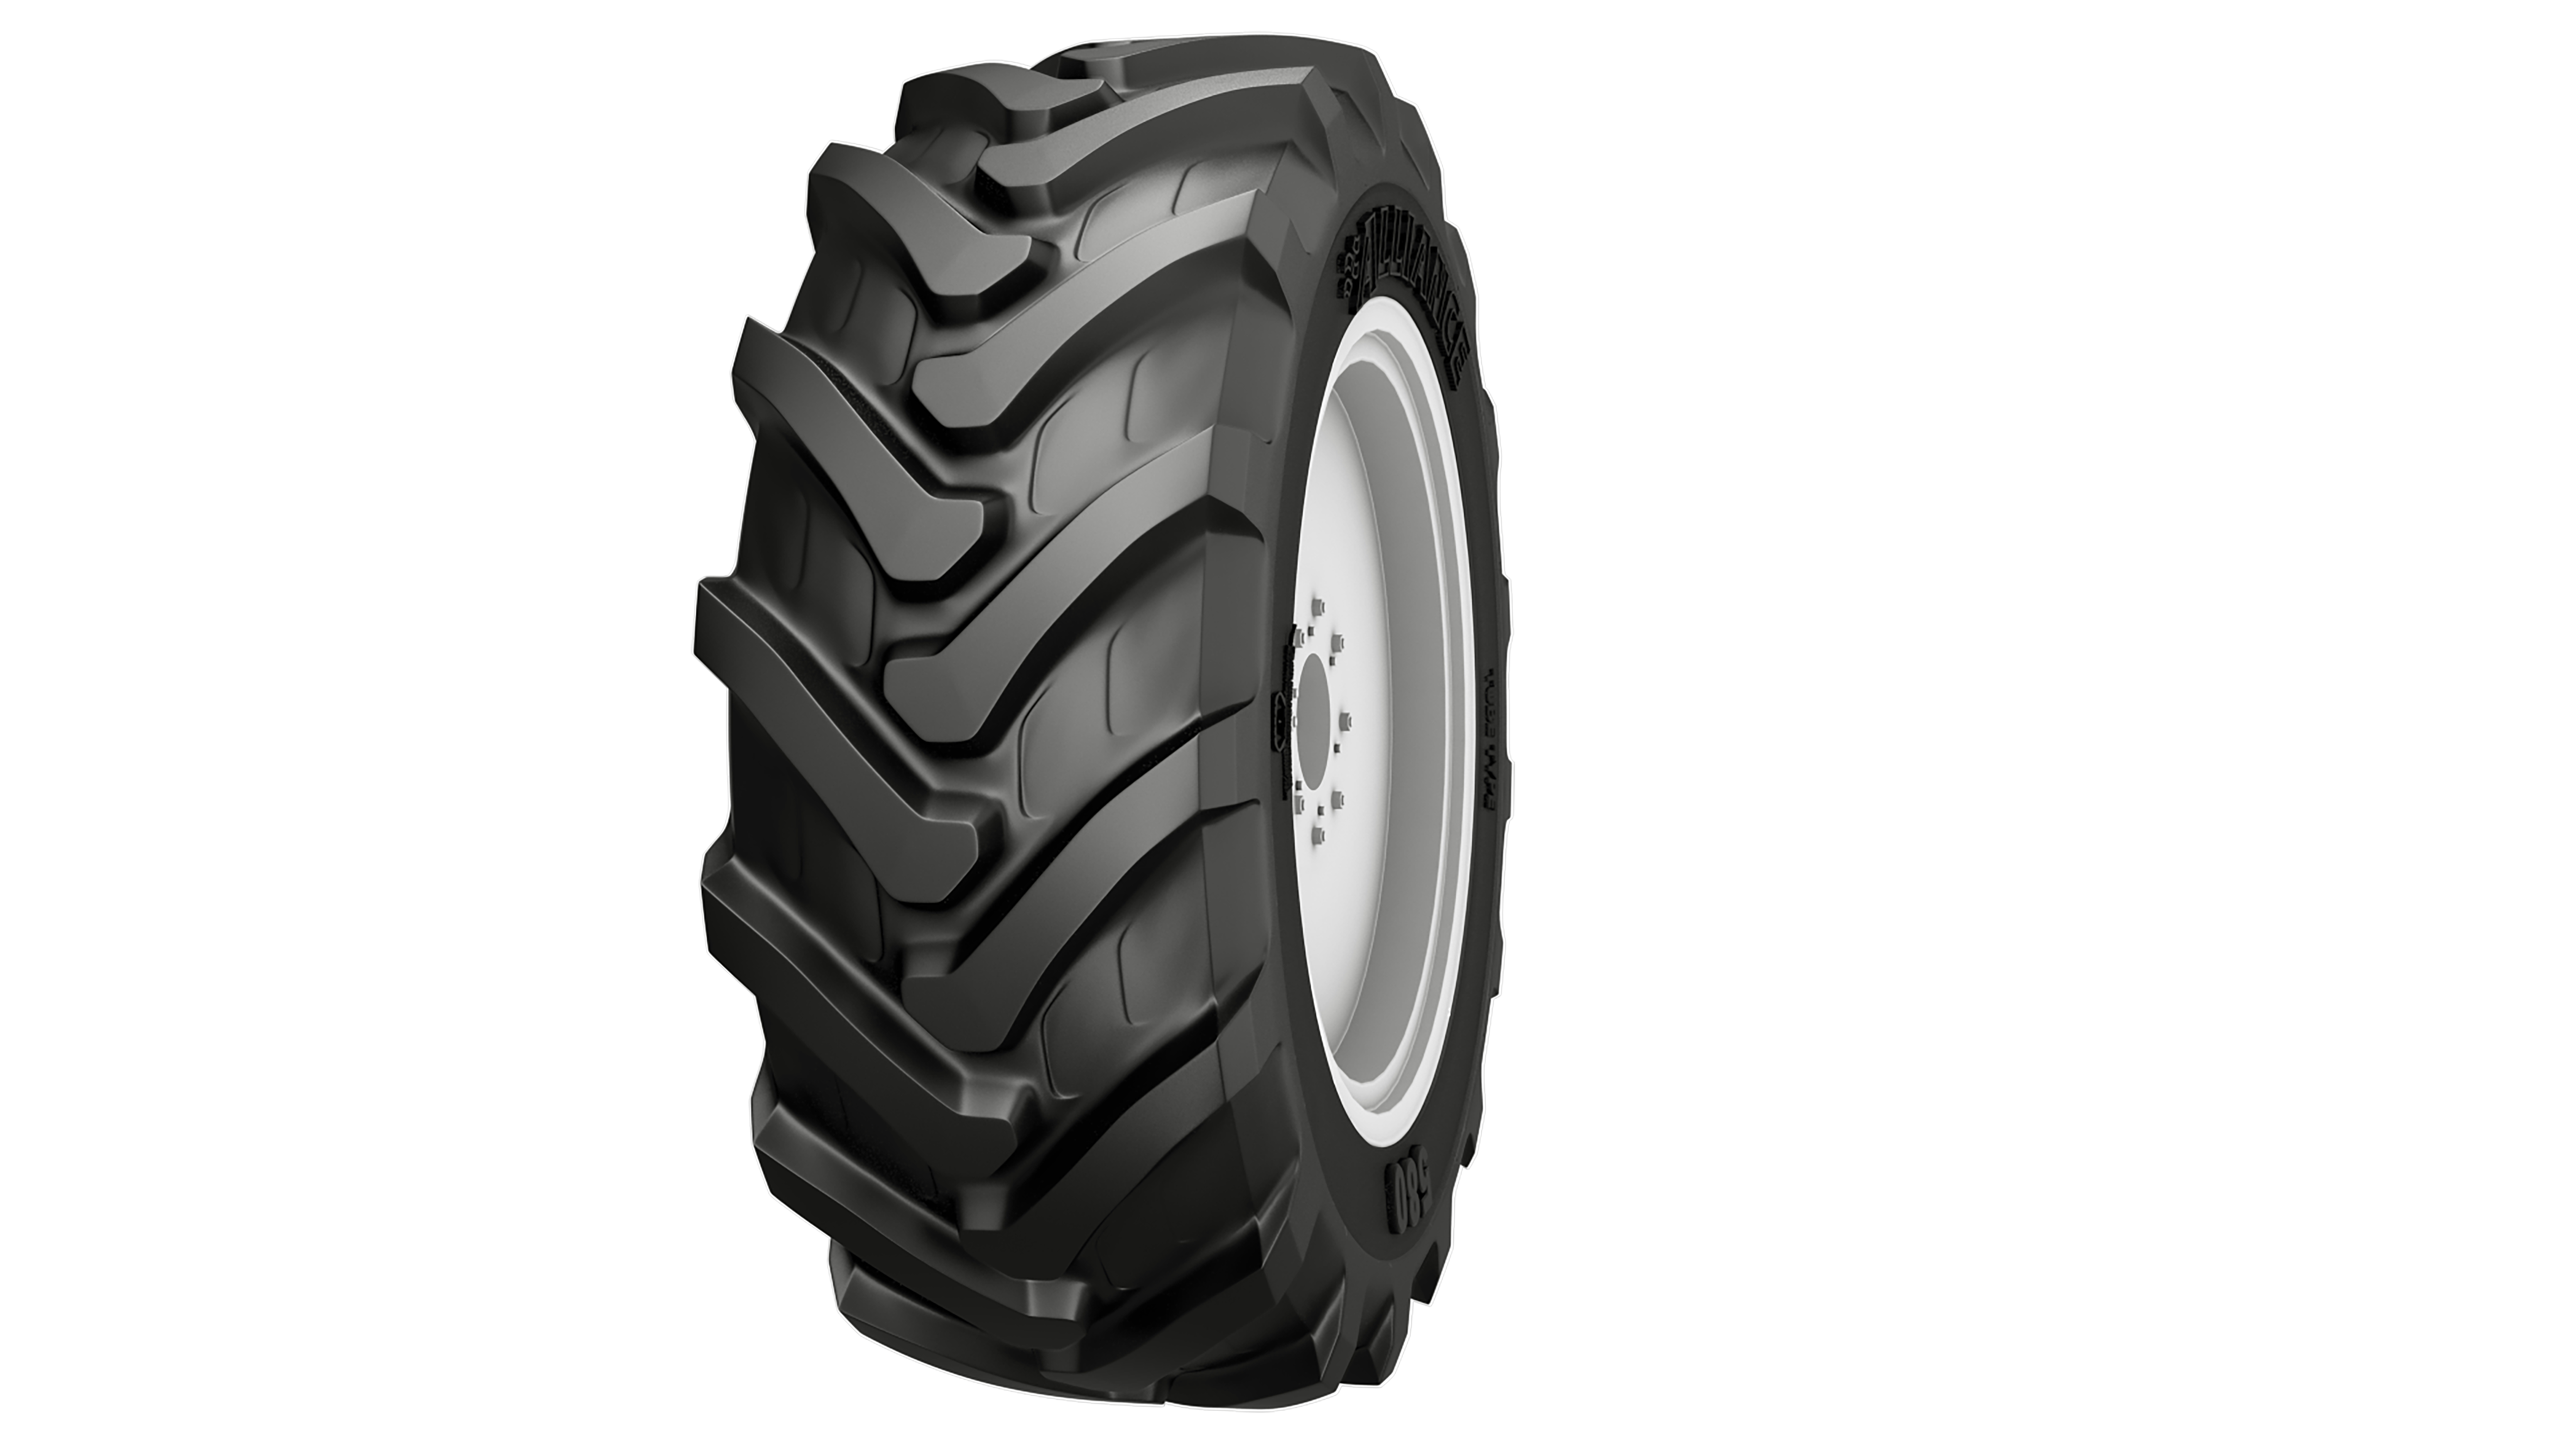  580 tire